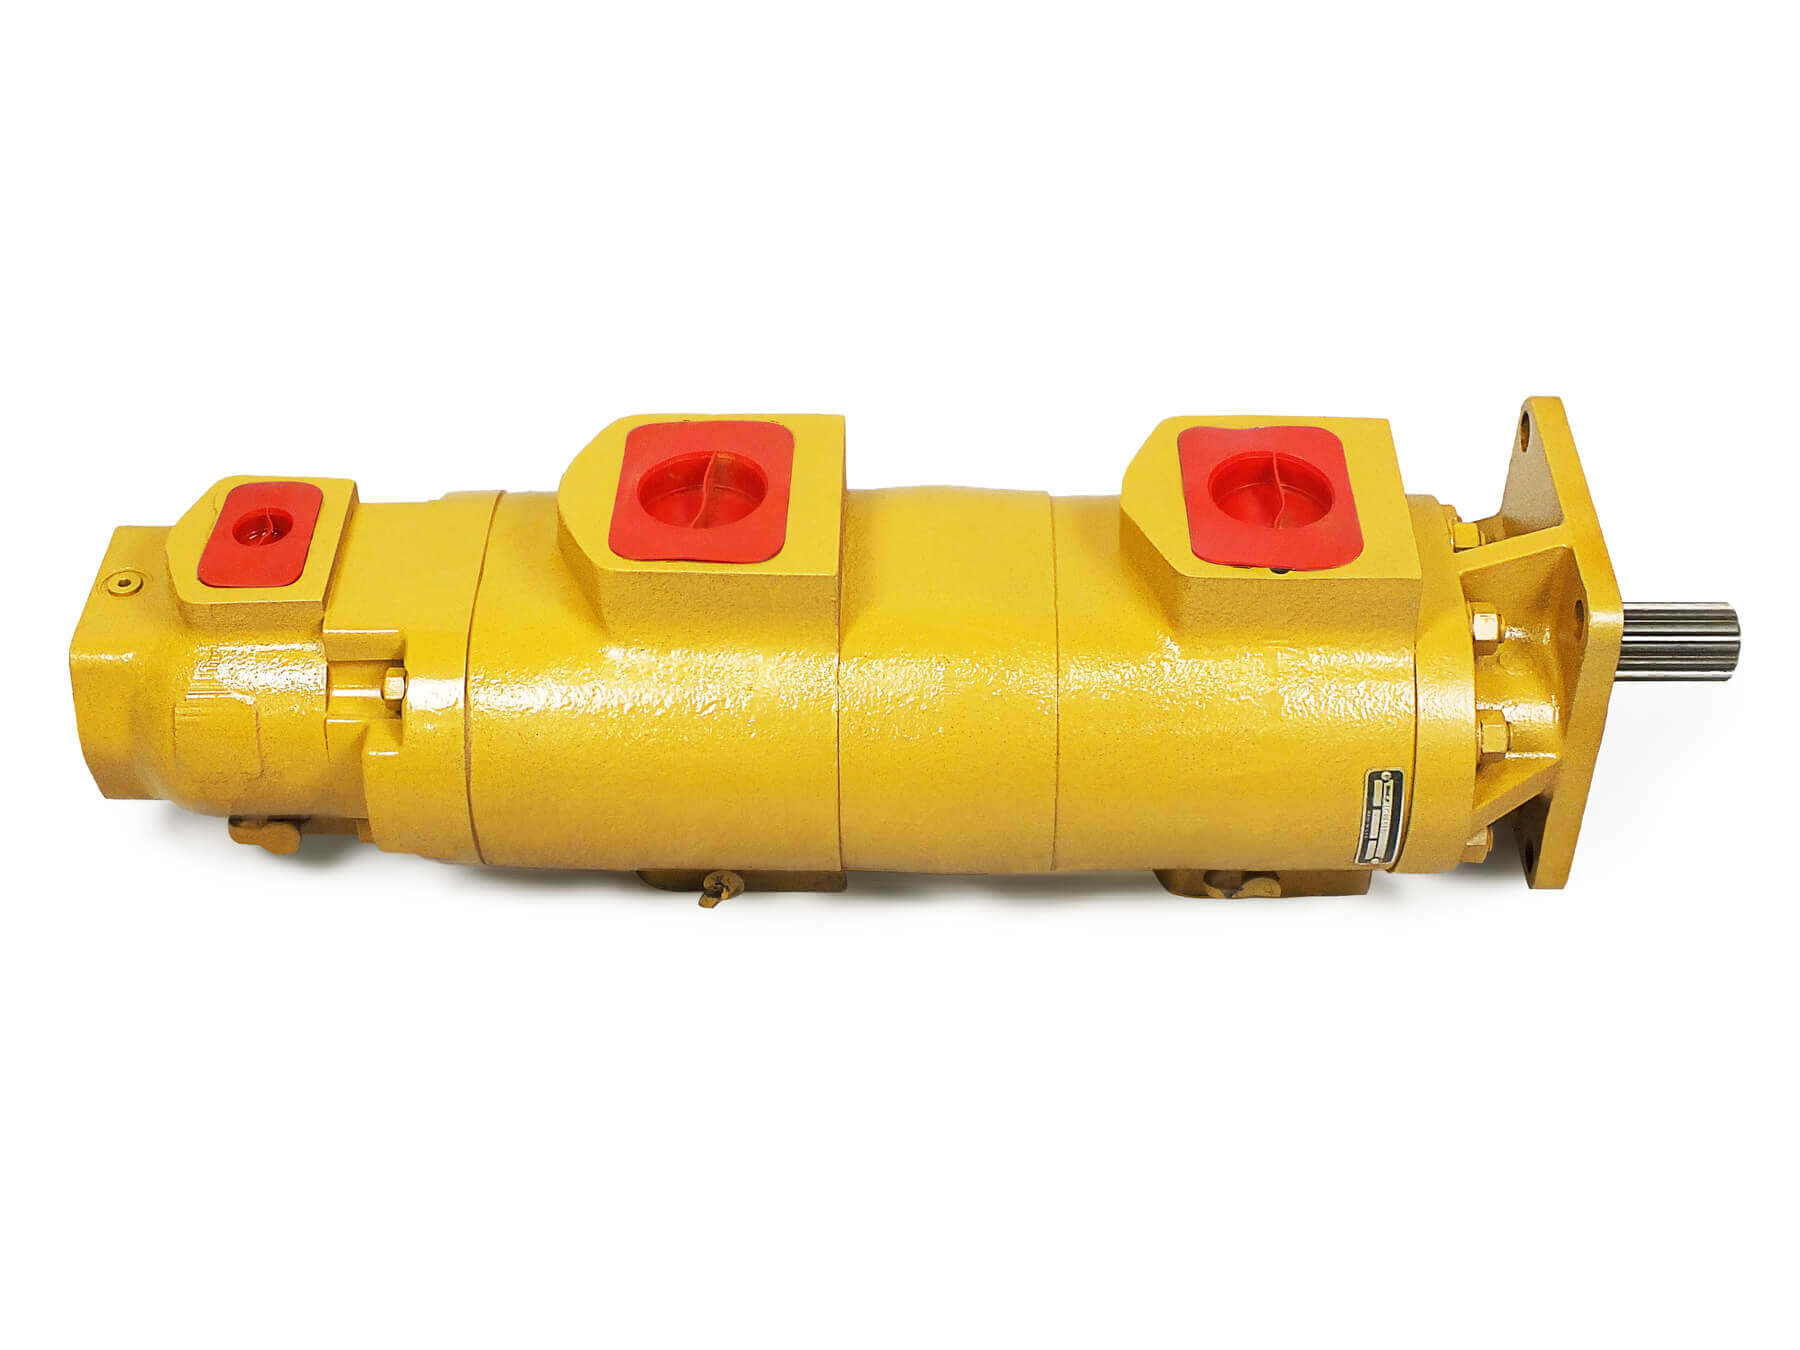 Vickers Hydraulic Pump Parts